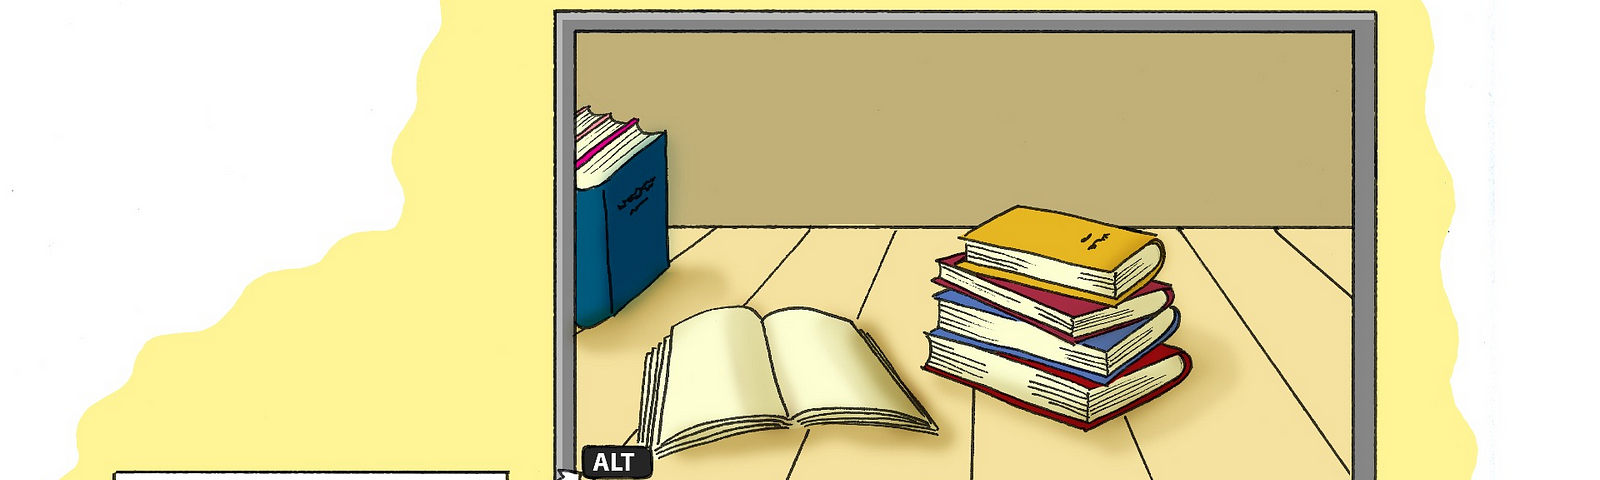 Ilustração de uma tela de computador apresentando a imagem de livros e um botão de ALT apresentando um texto informativo sobre como usar o recurso.